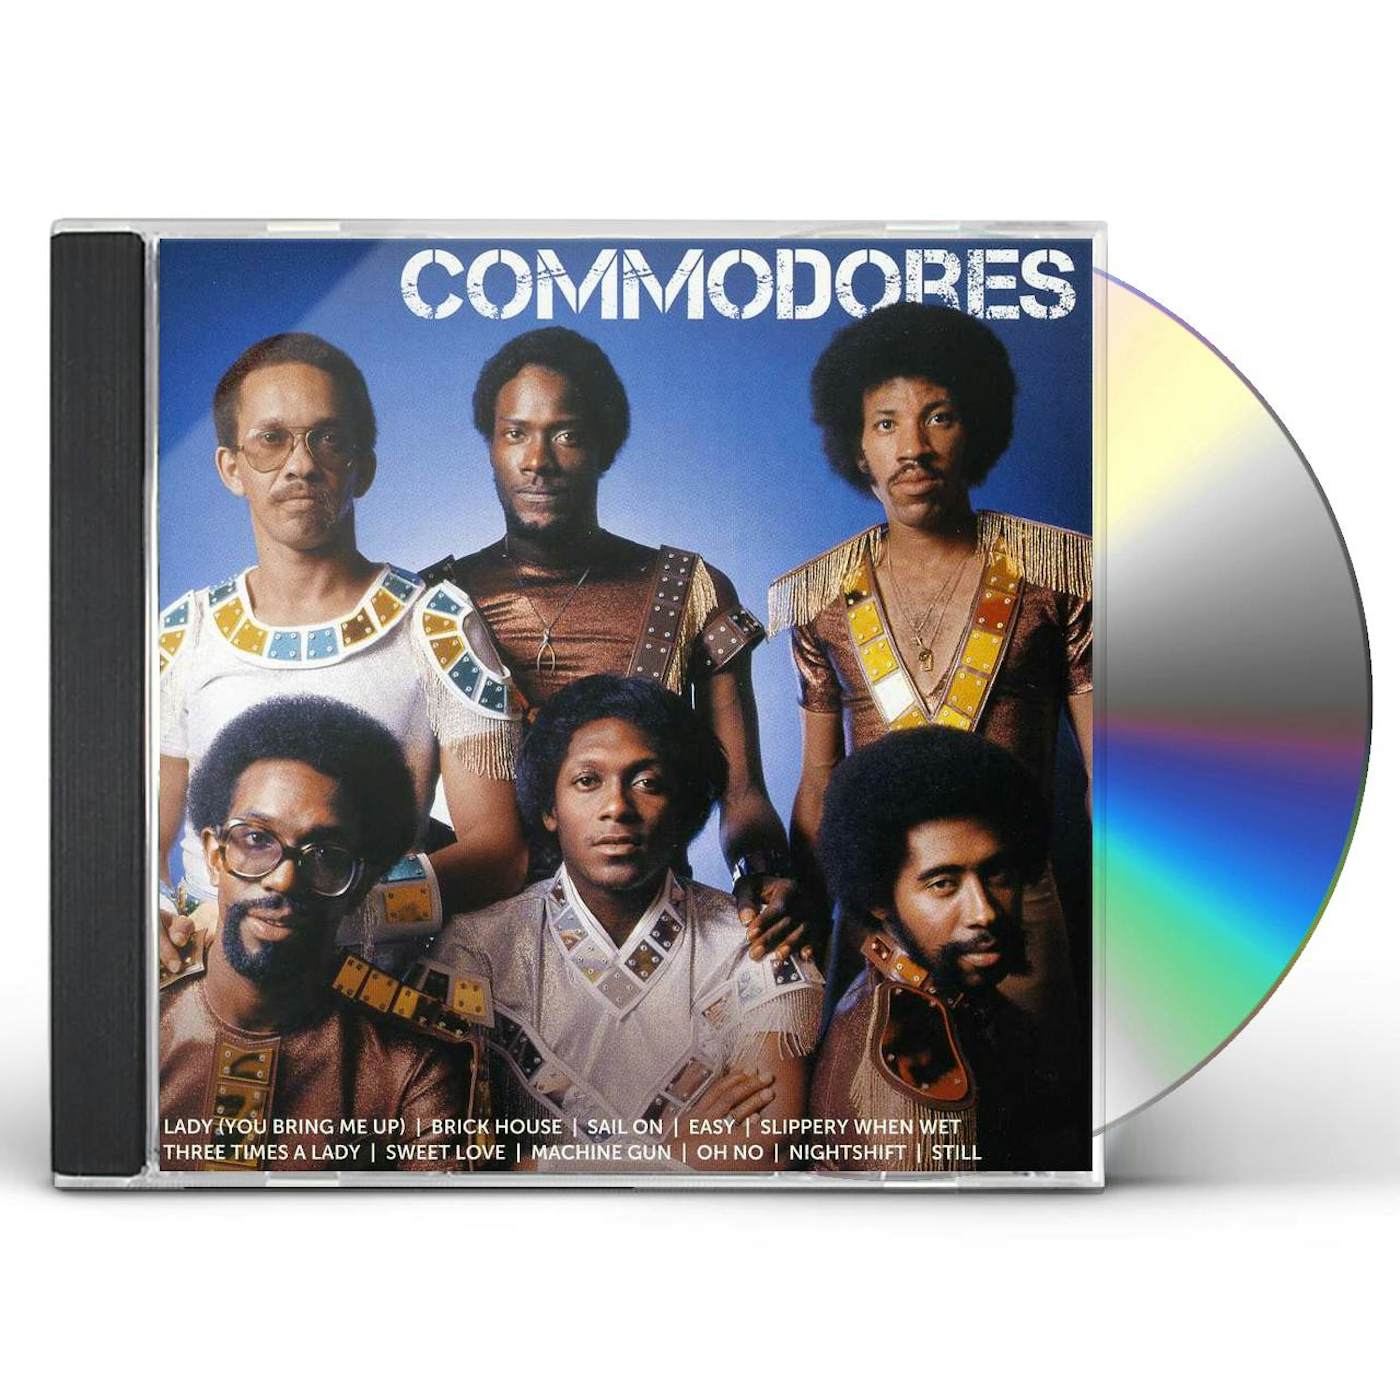 Commodores ICON CD